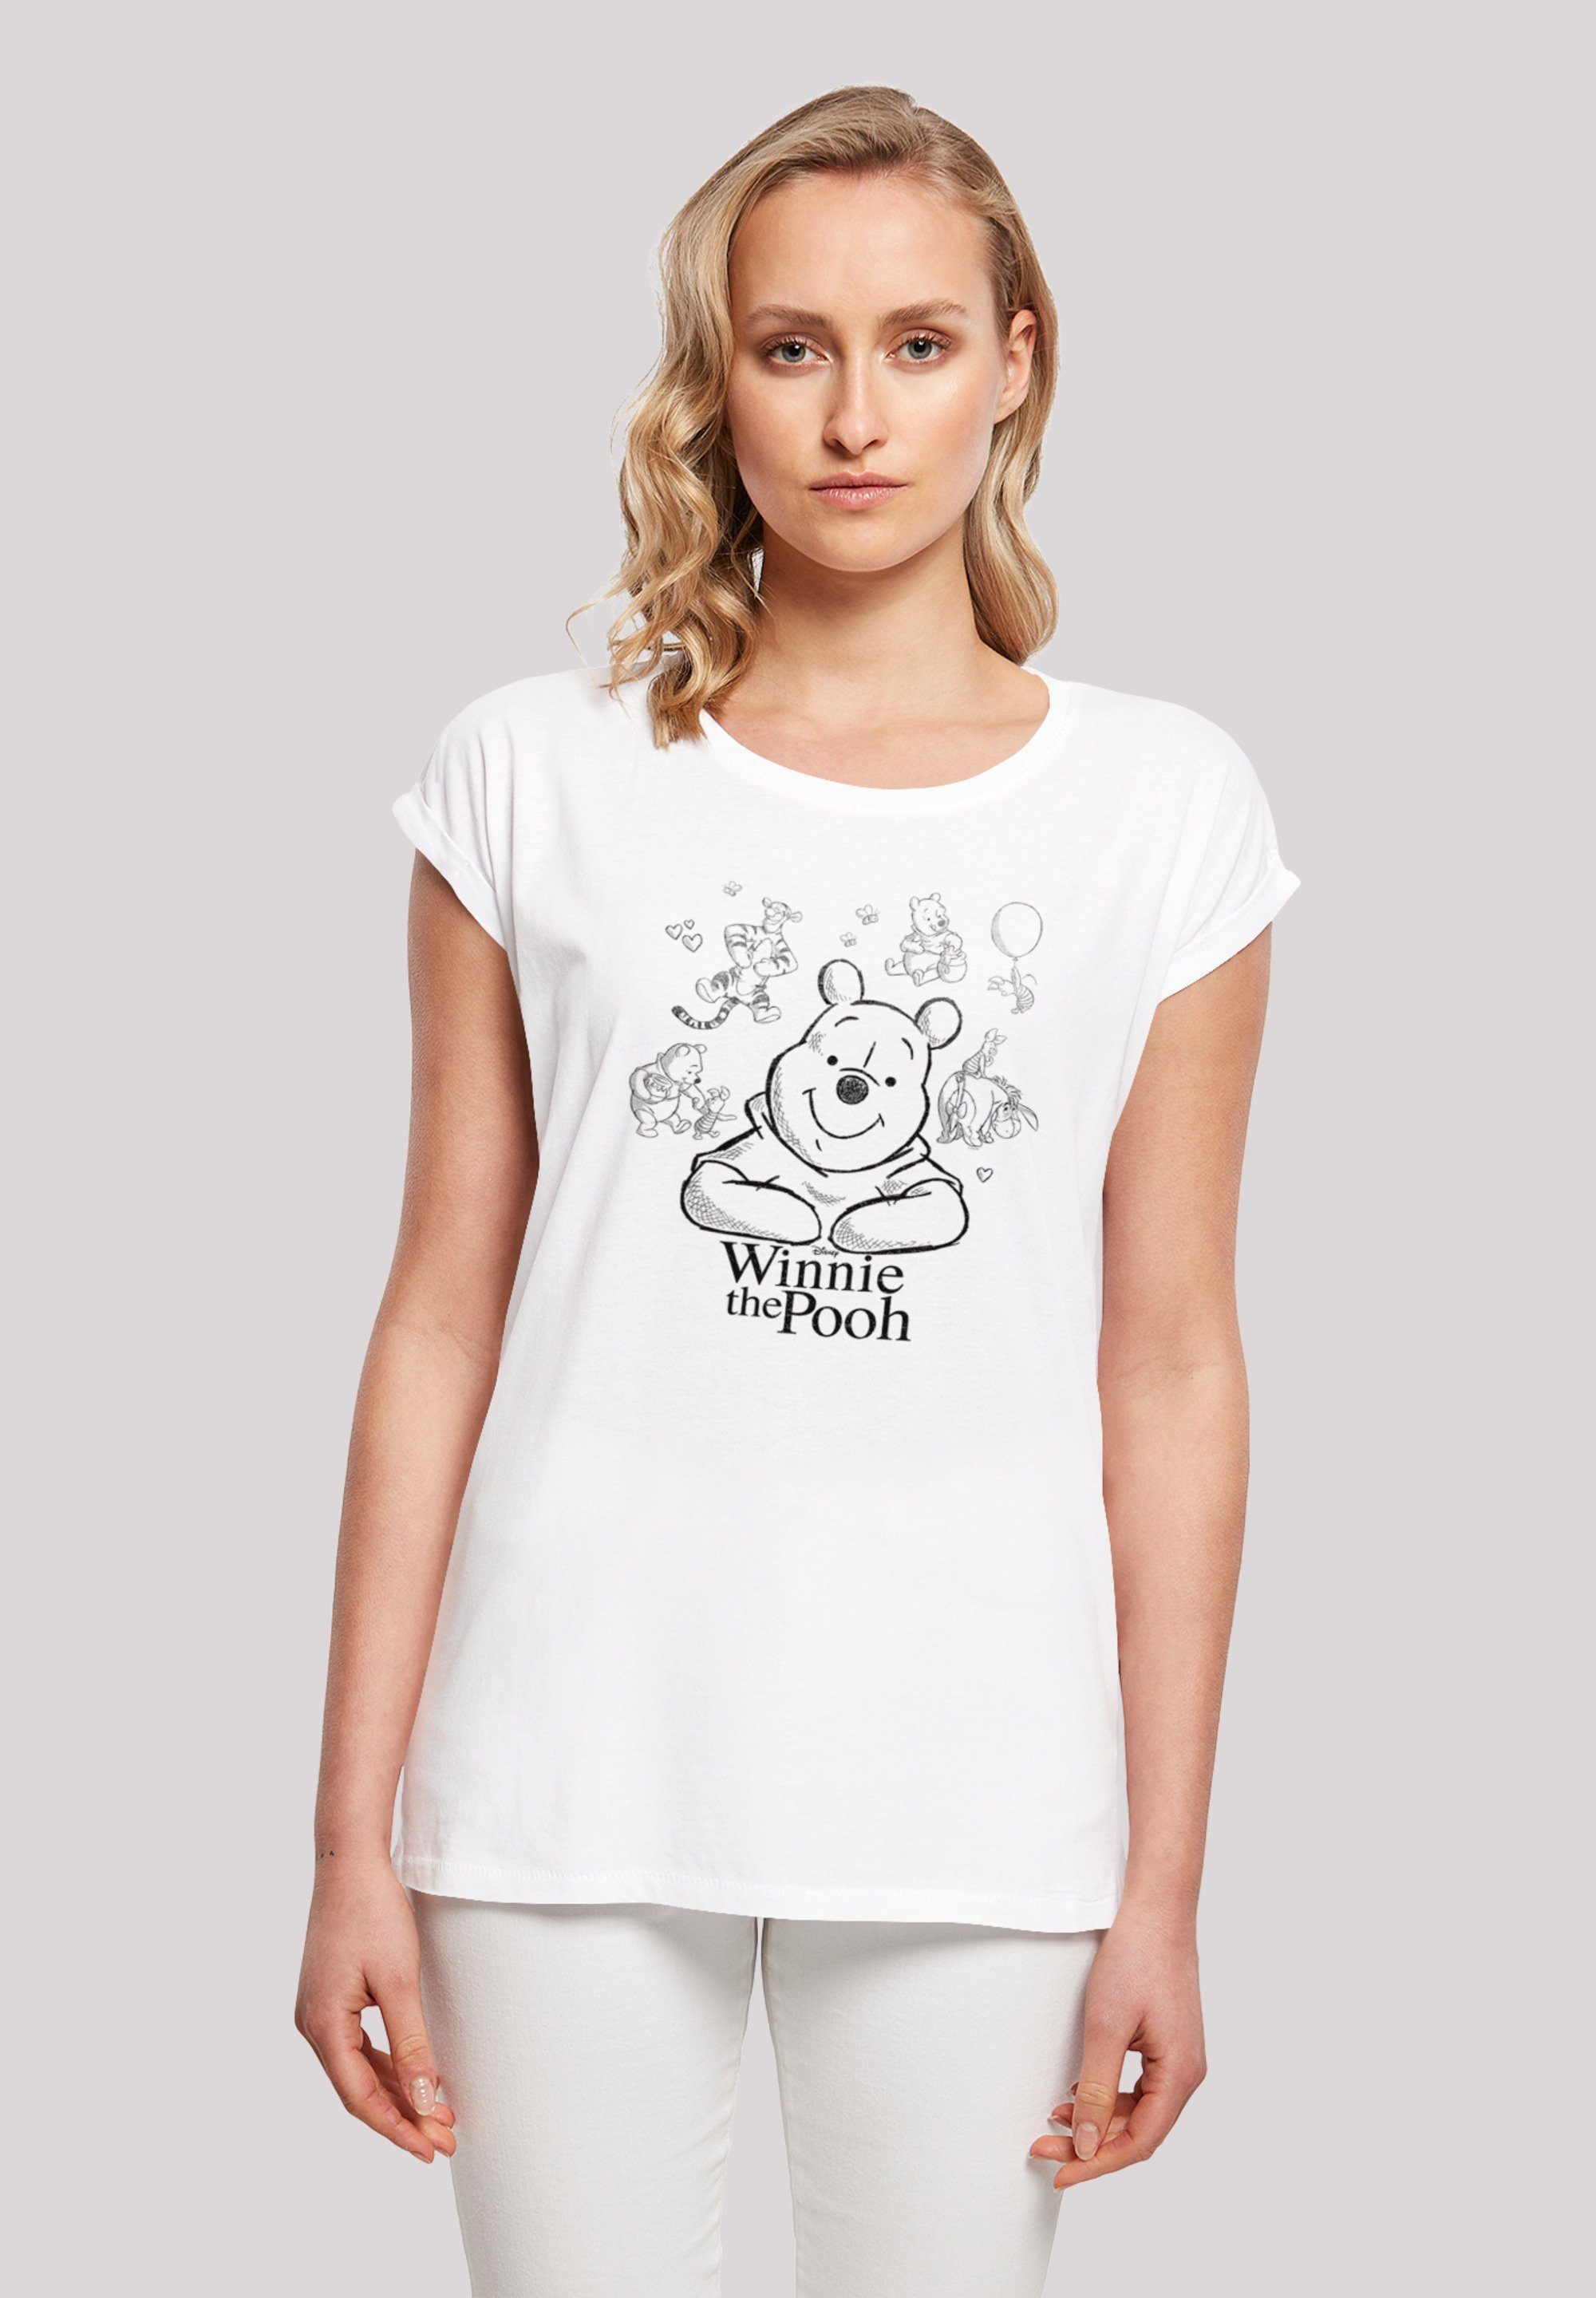 preisberechnung F4NT4STIC T-Shirt Winnie T-Shirt Sketch Der Collage lizenziertes Bär Print, Offiziell Puuh Disney